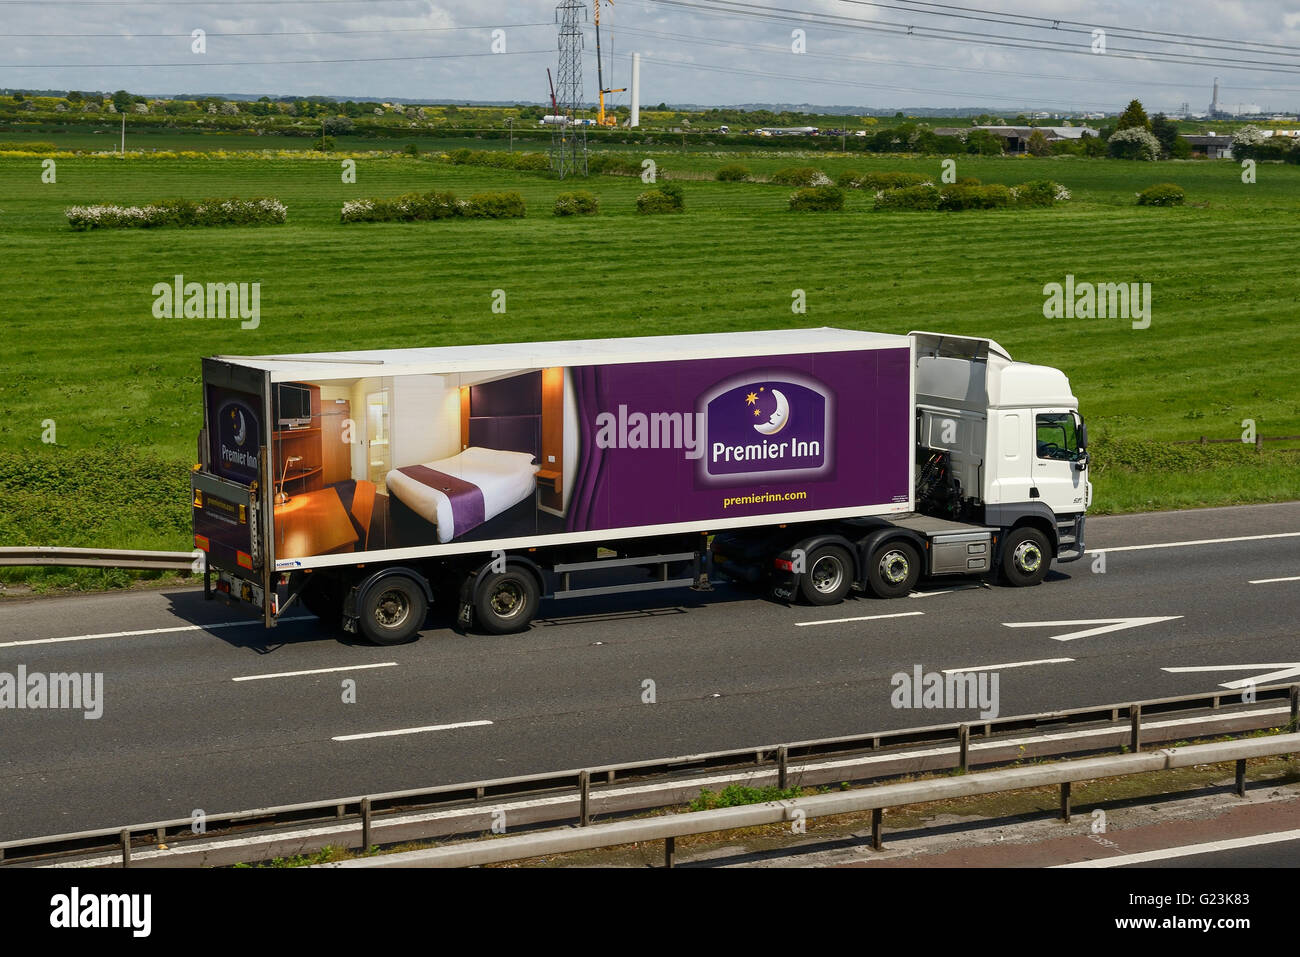 Premier Inn Lkw unterwegs auf der Autobahn M56 in Cheshire UK Stockfoto